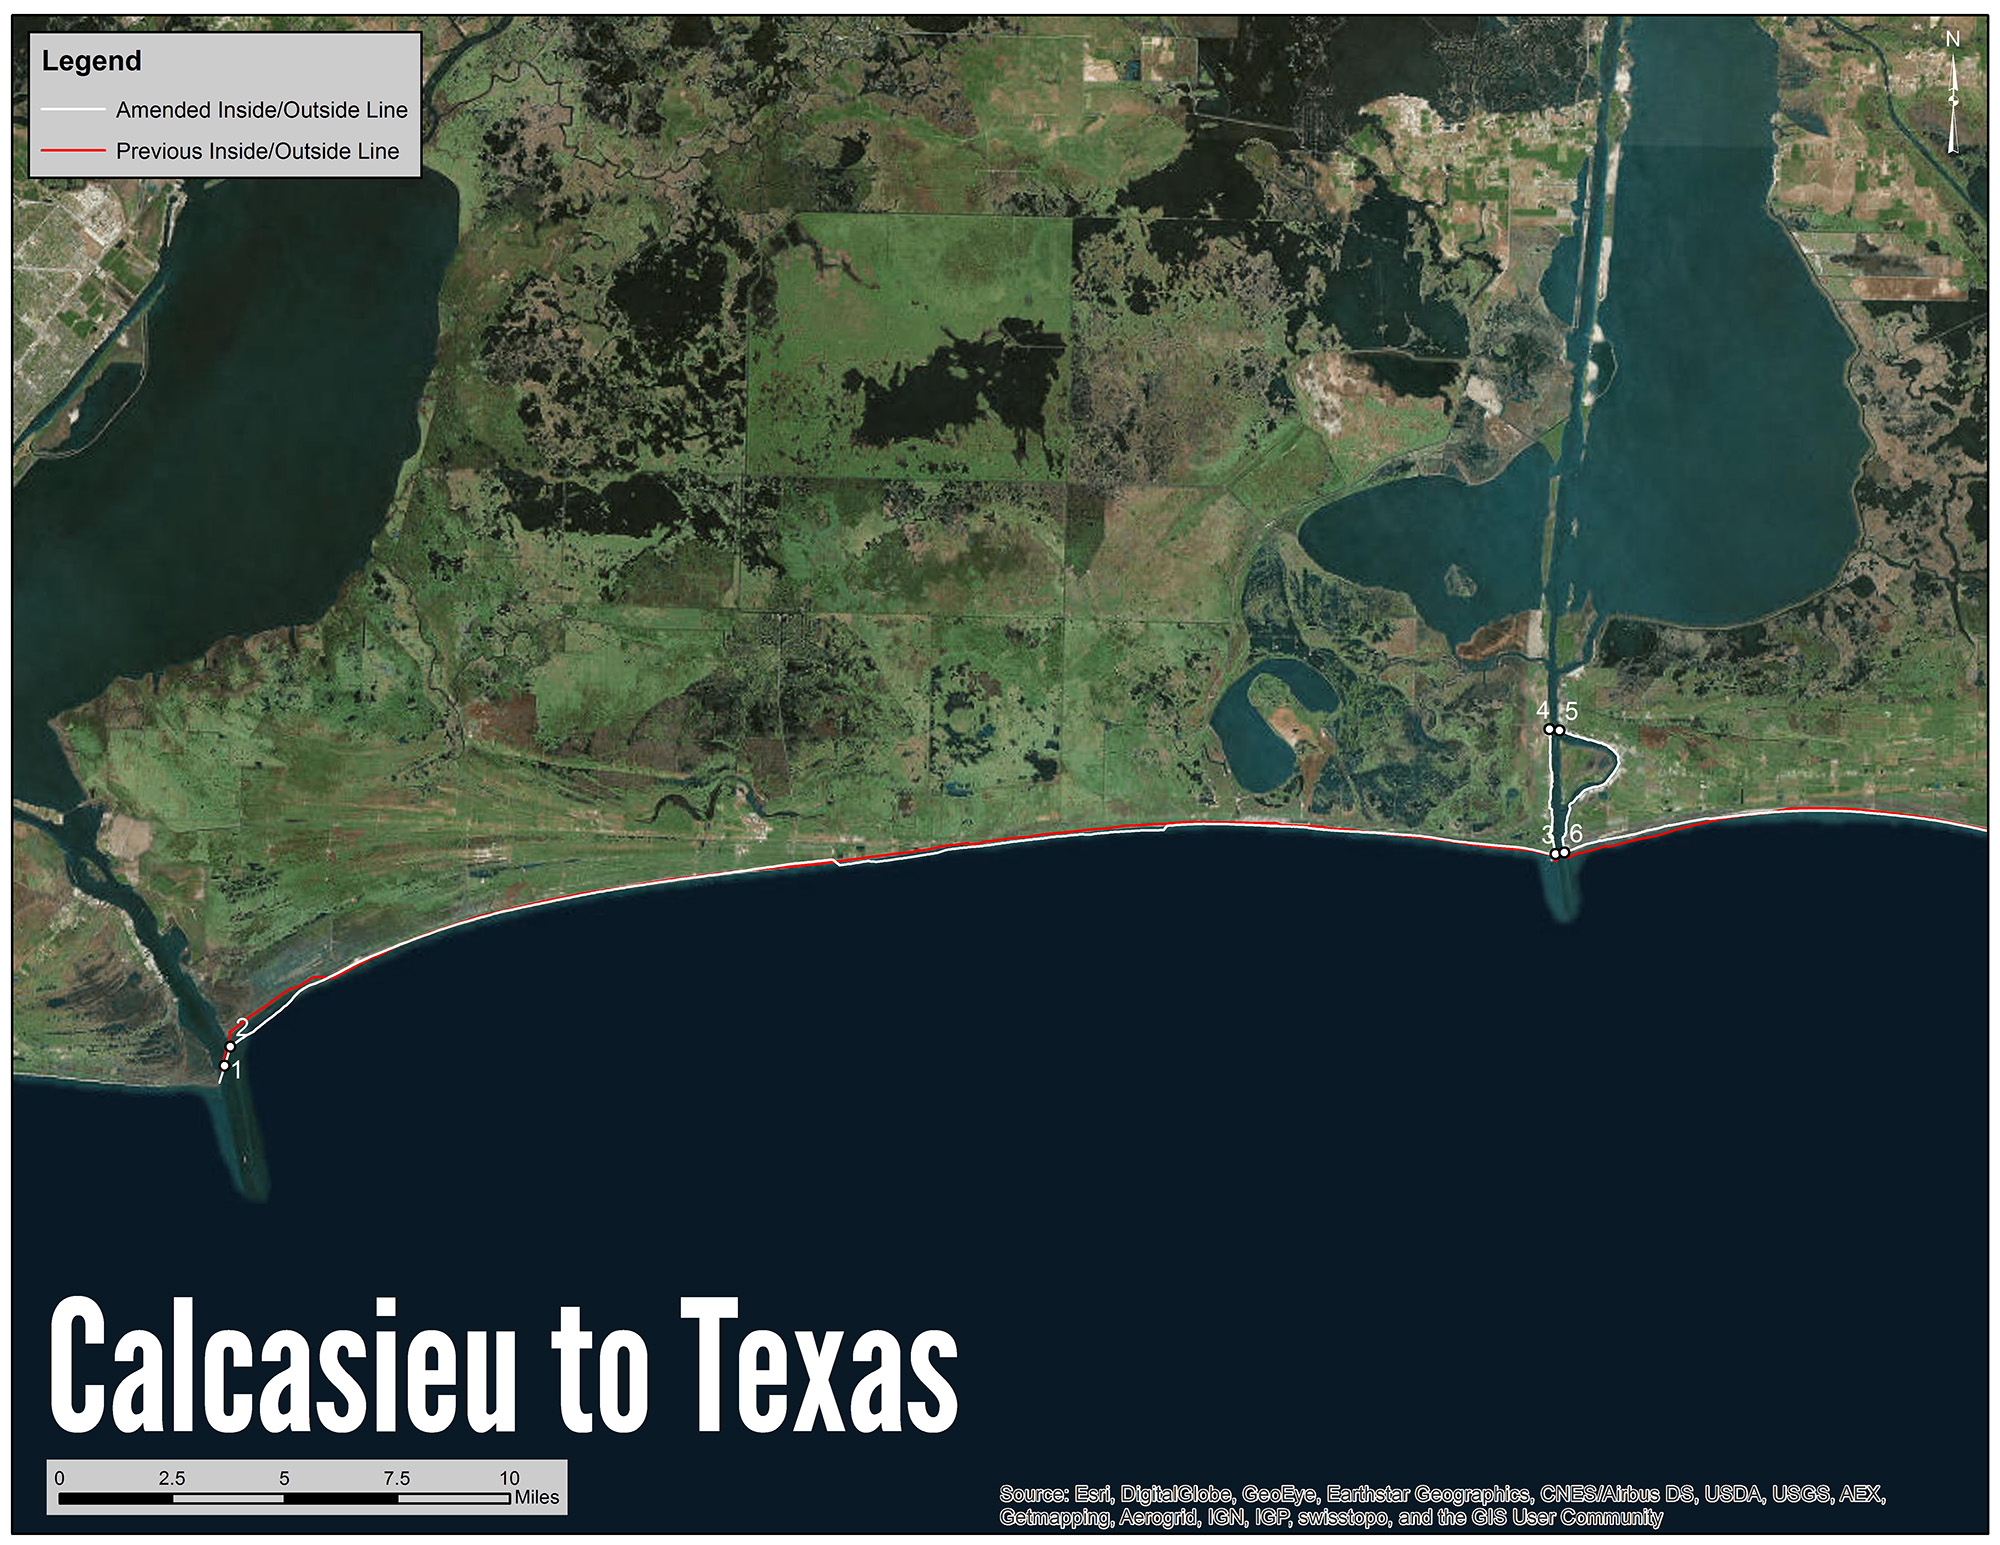 Calcasieu to Texas Shrimp Line Map